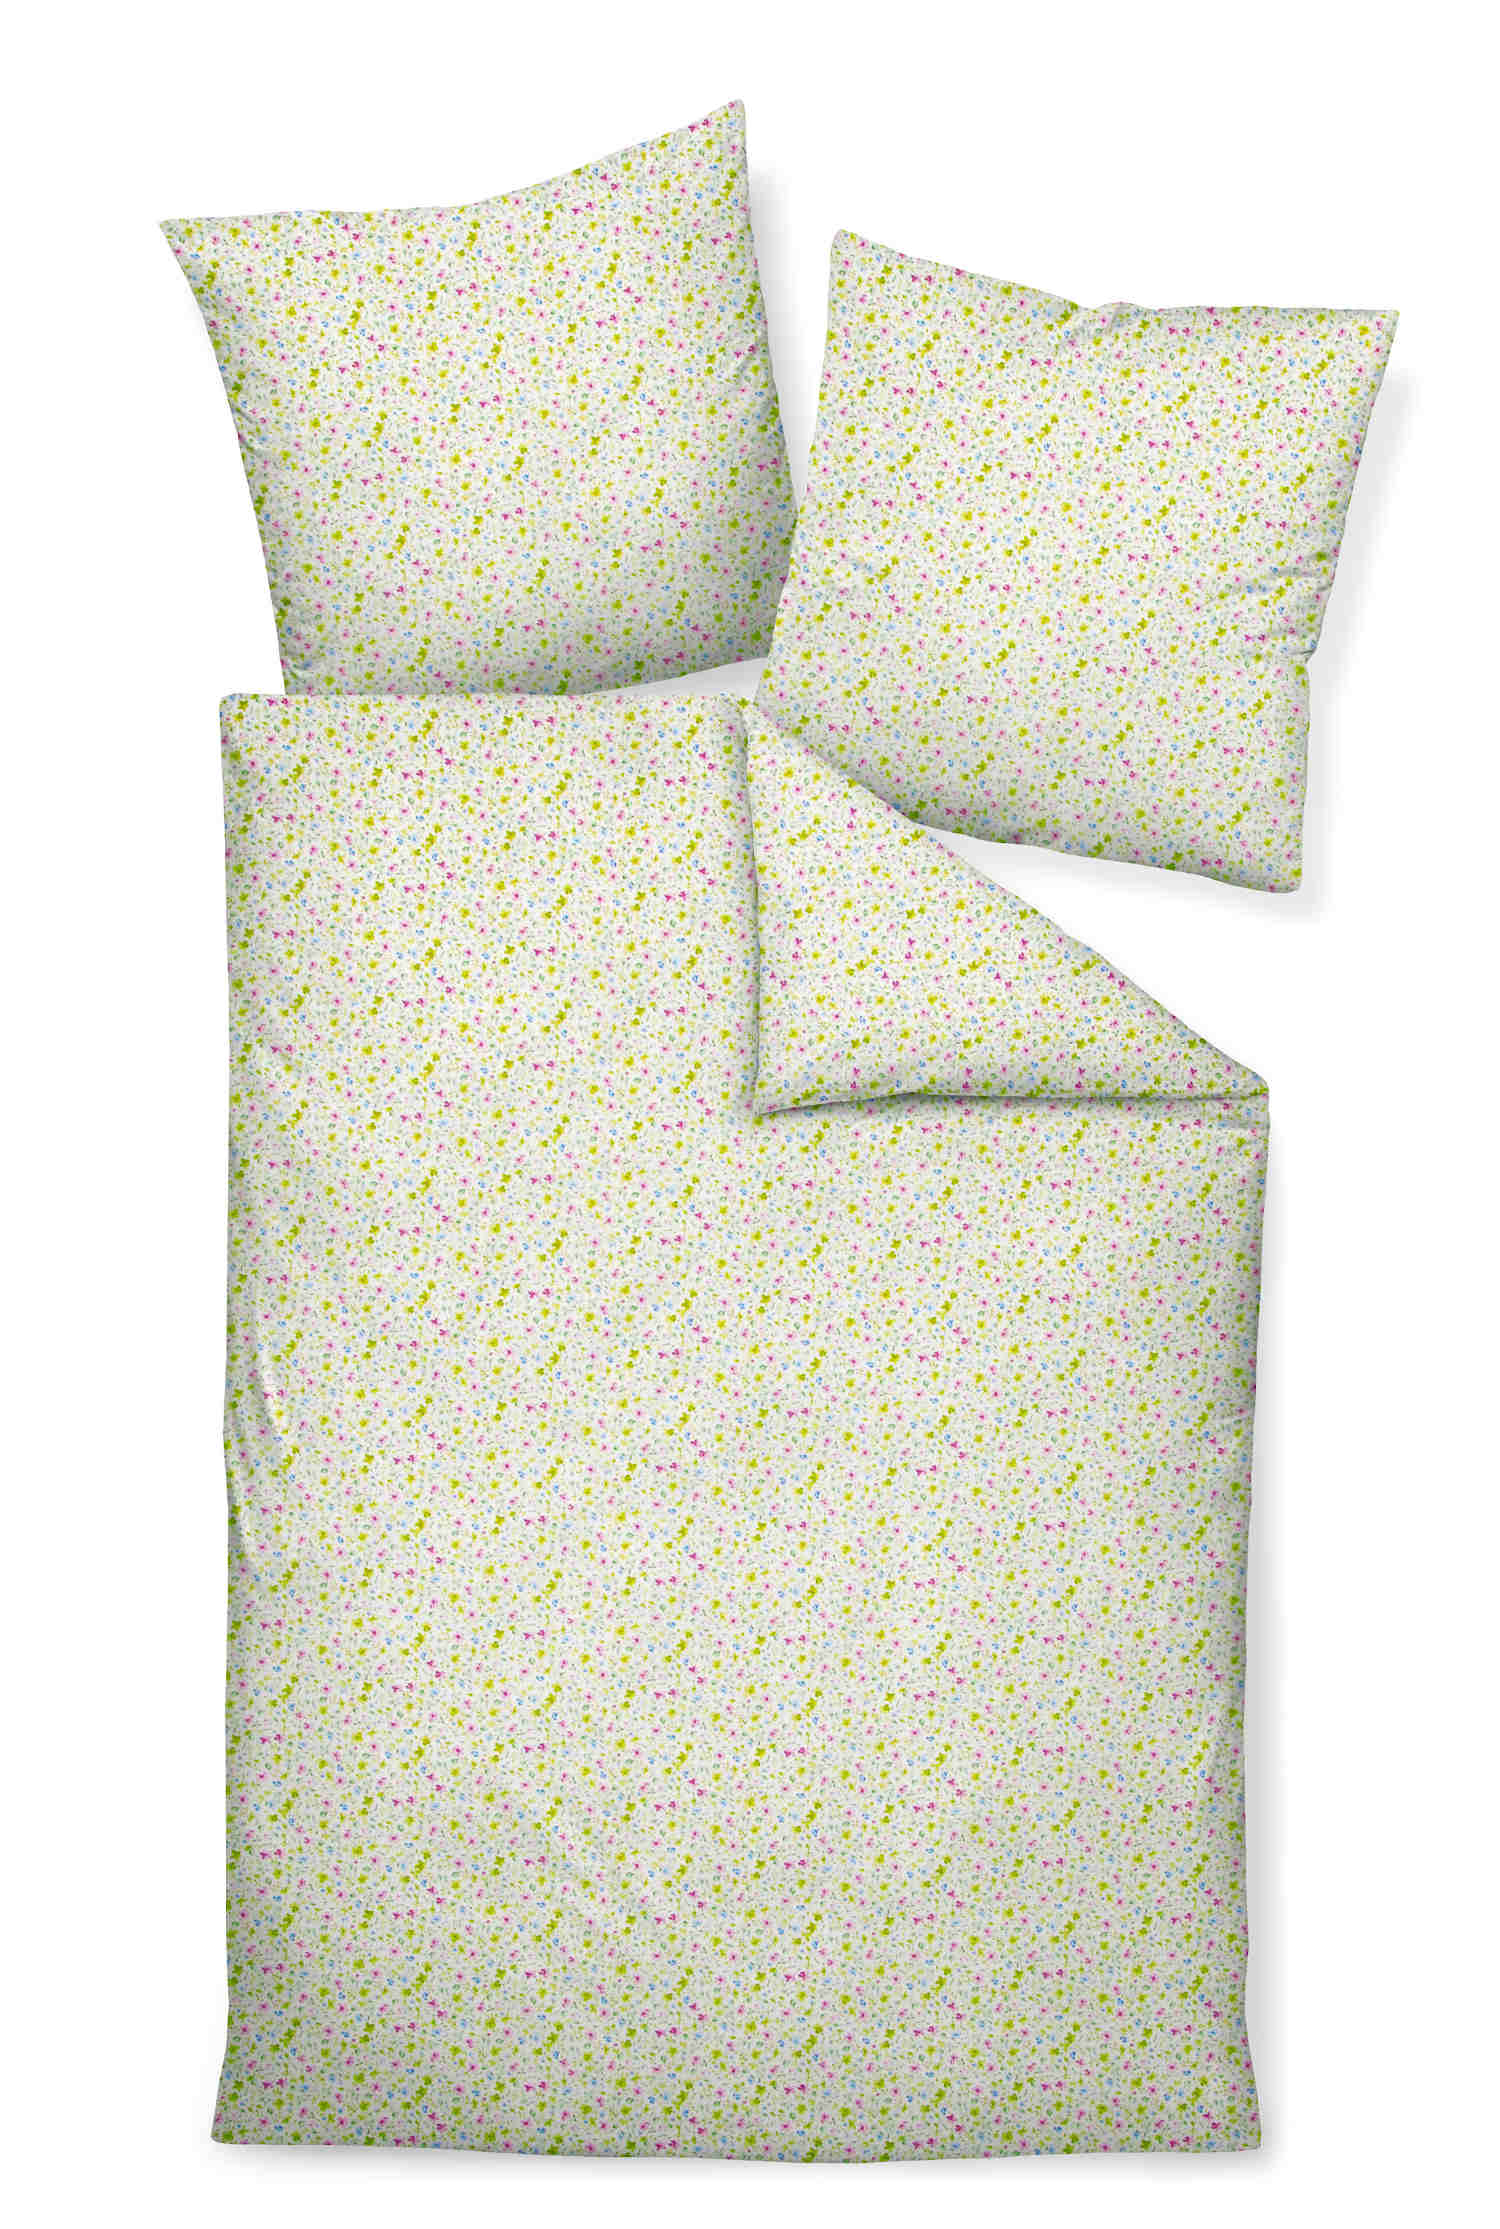 Janine Bettwäsche - Tango - grün mit floralem Muster, Seersucker aus 100% Baumwolle, bügelfrei, 135 x 200cm